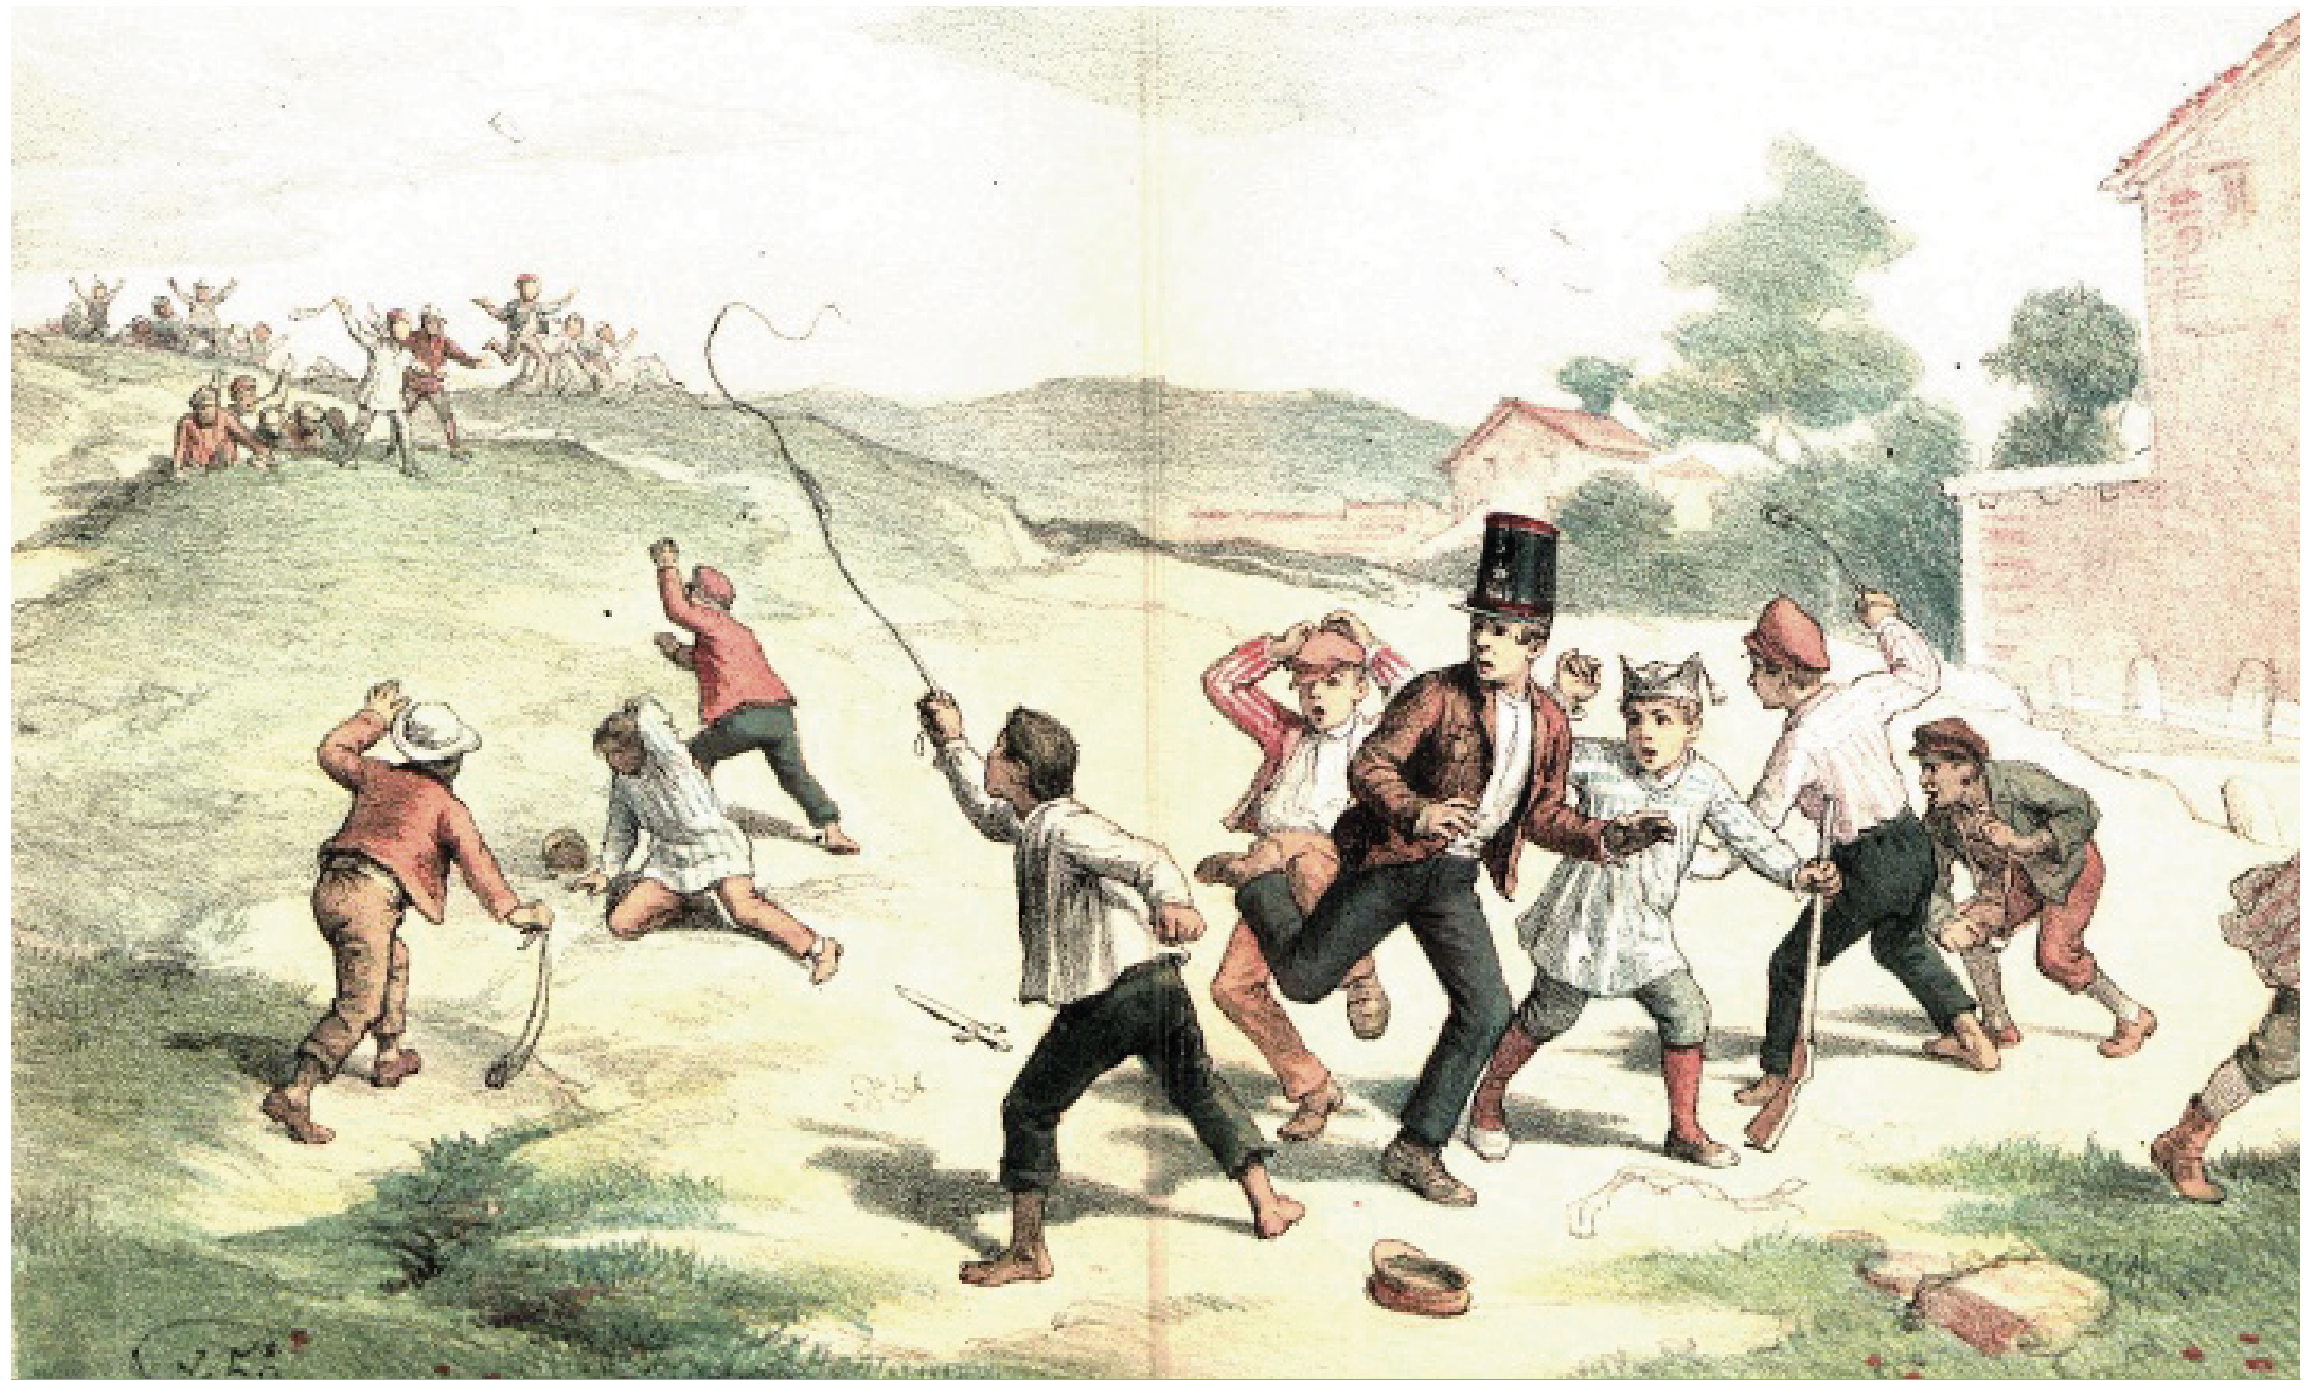 El juego de las pedradas, El Mundo de los niños, 10 de junio de 1888..